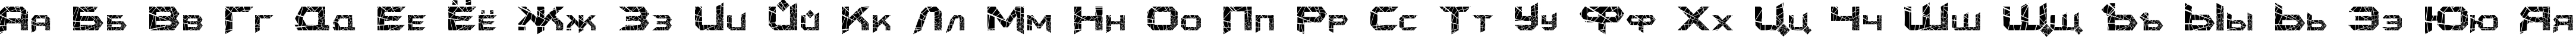 Пример написания русского алфавита шрифтом FK Batman Shatter.kz